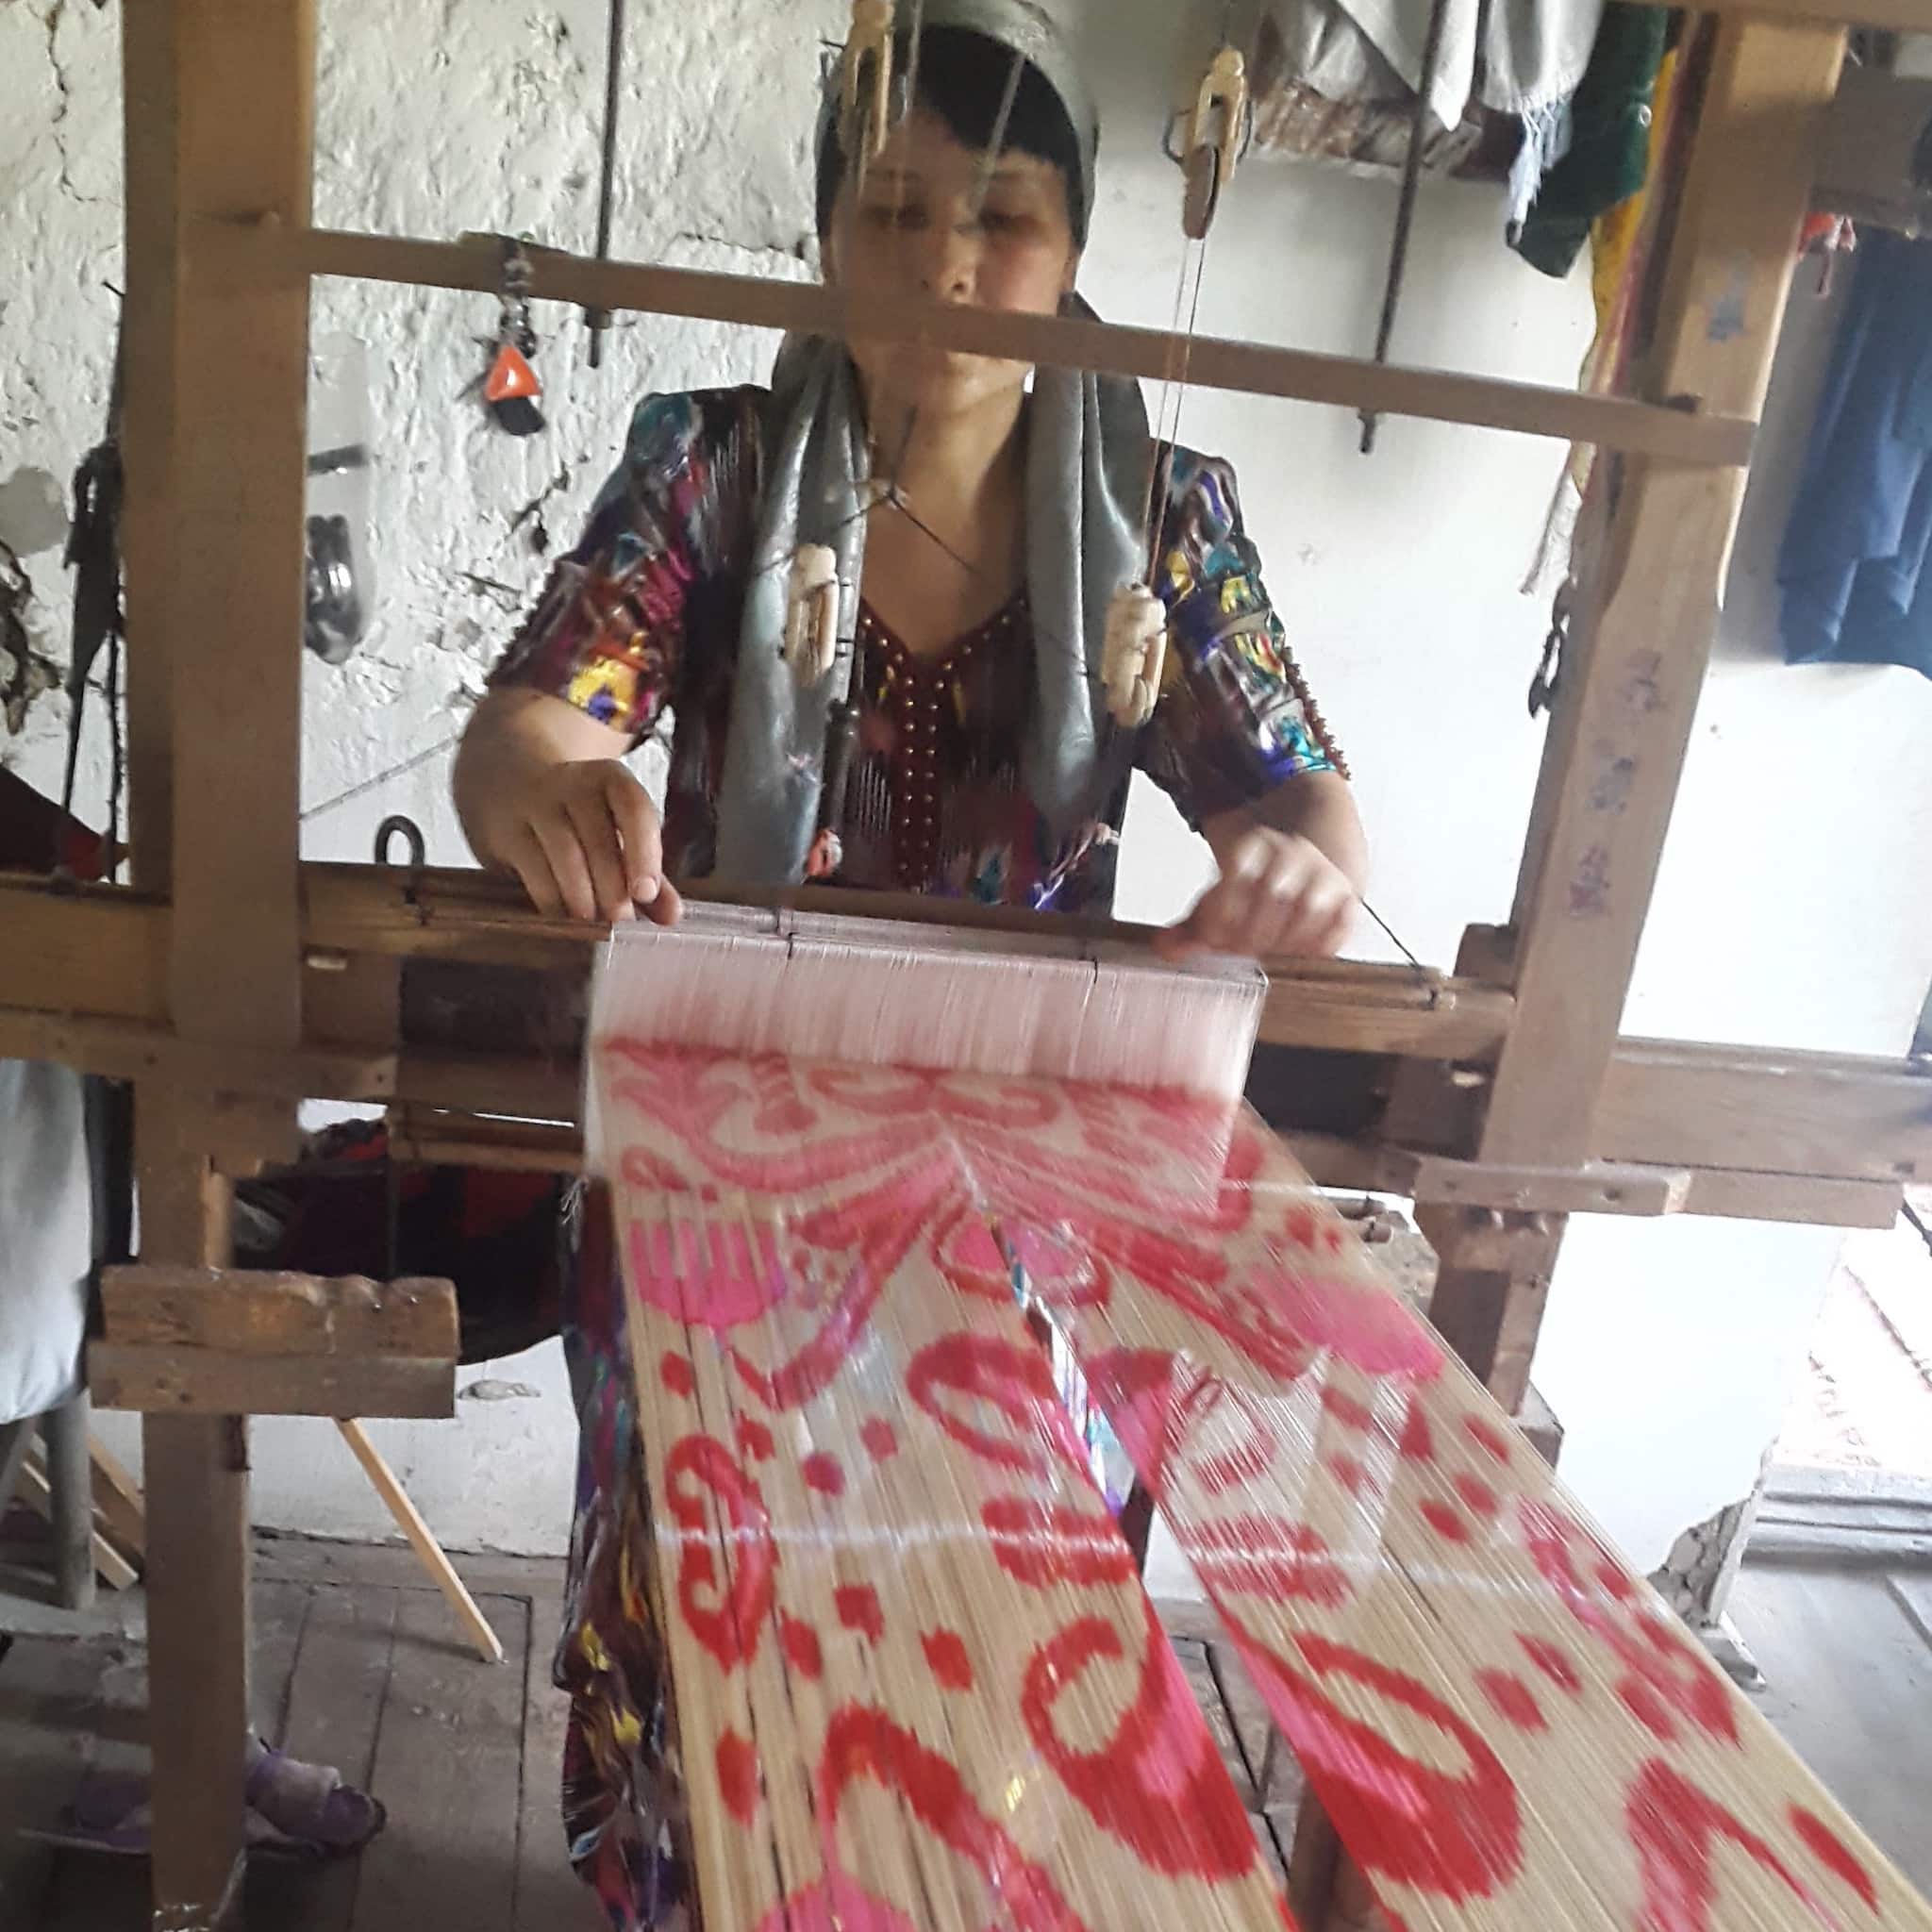 Ikat Weaving at Loom _ HoonArts (IkatUz) (2048 sq) (1) copy 2